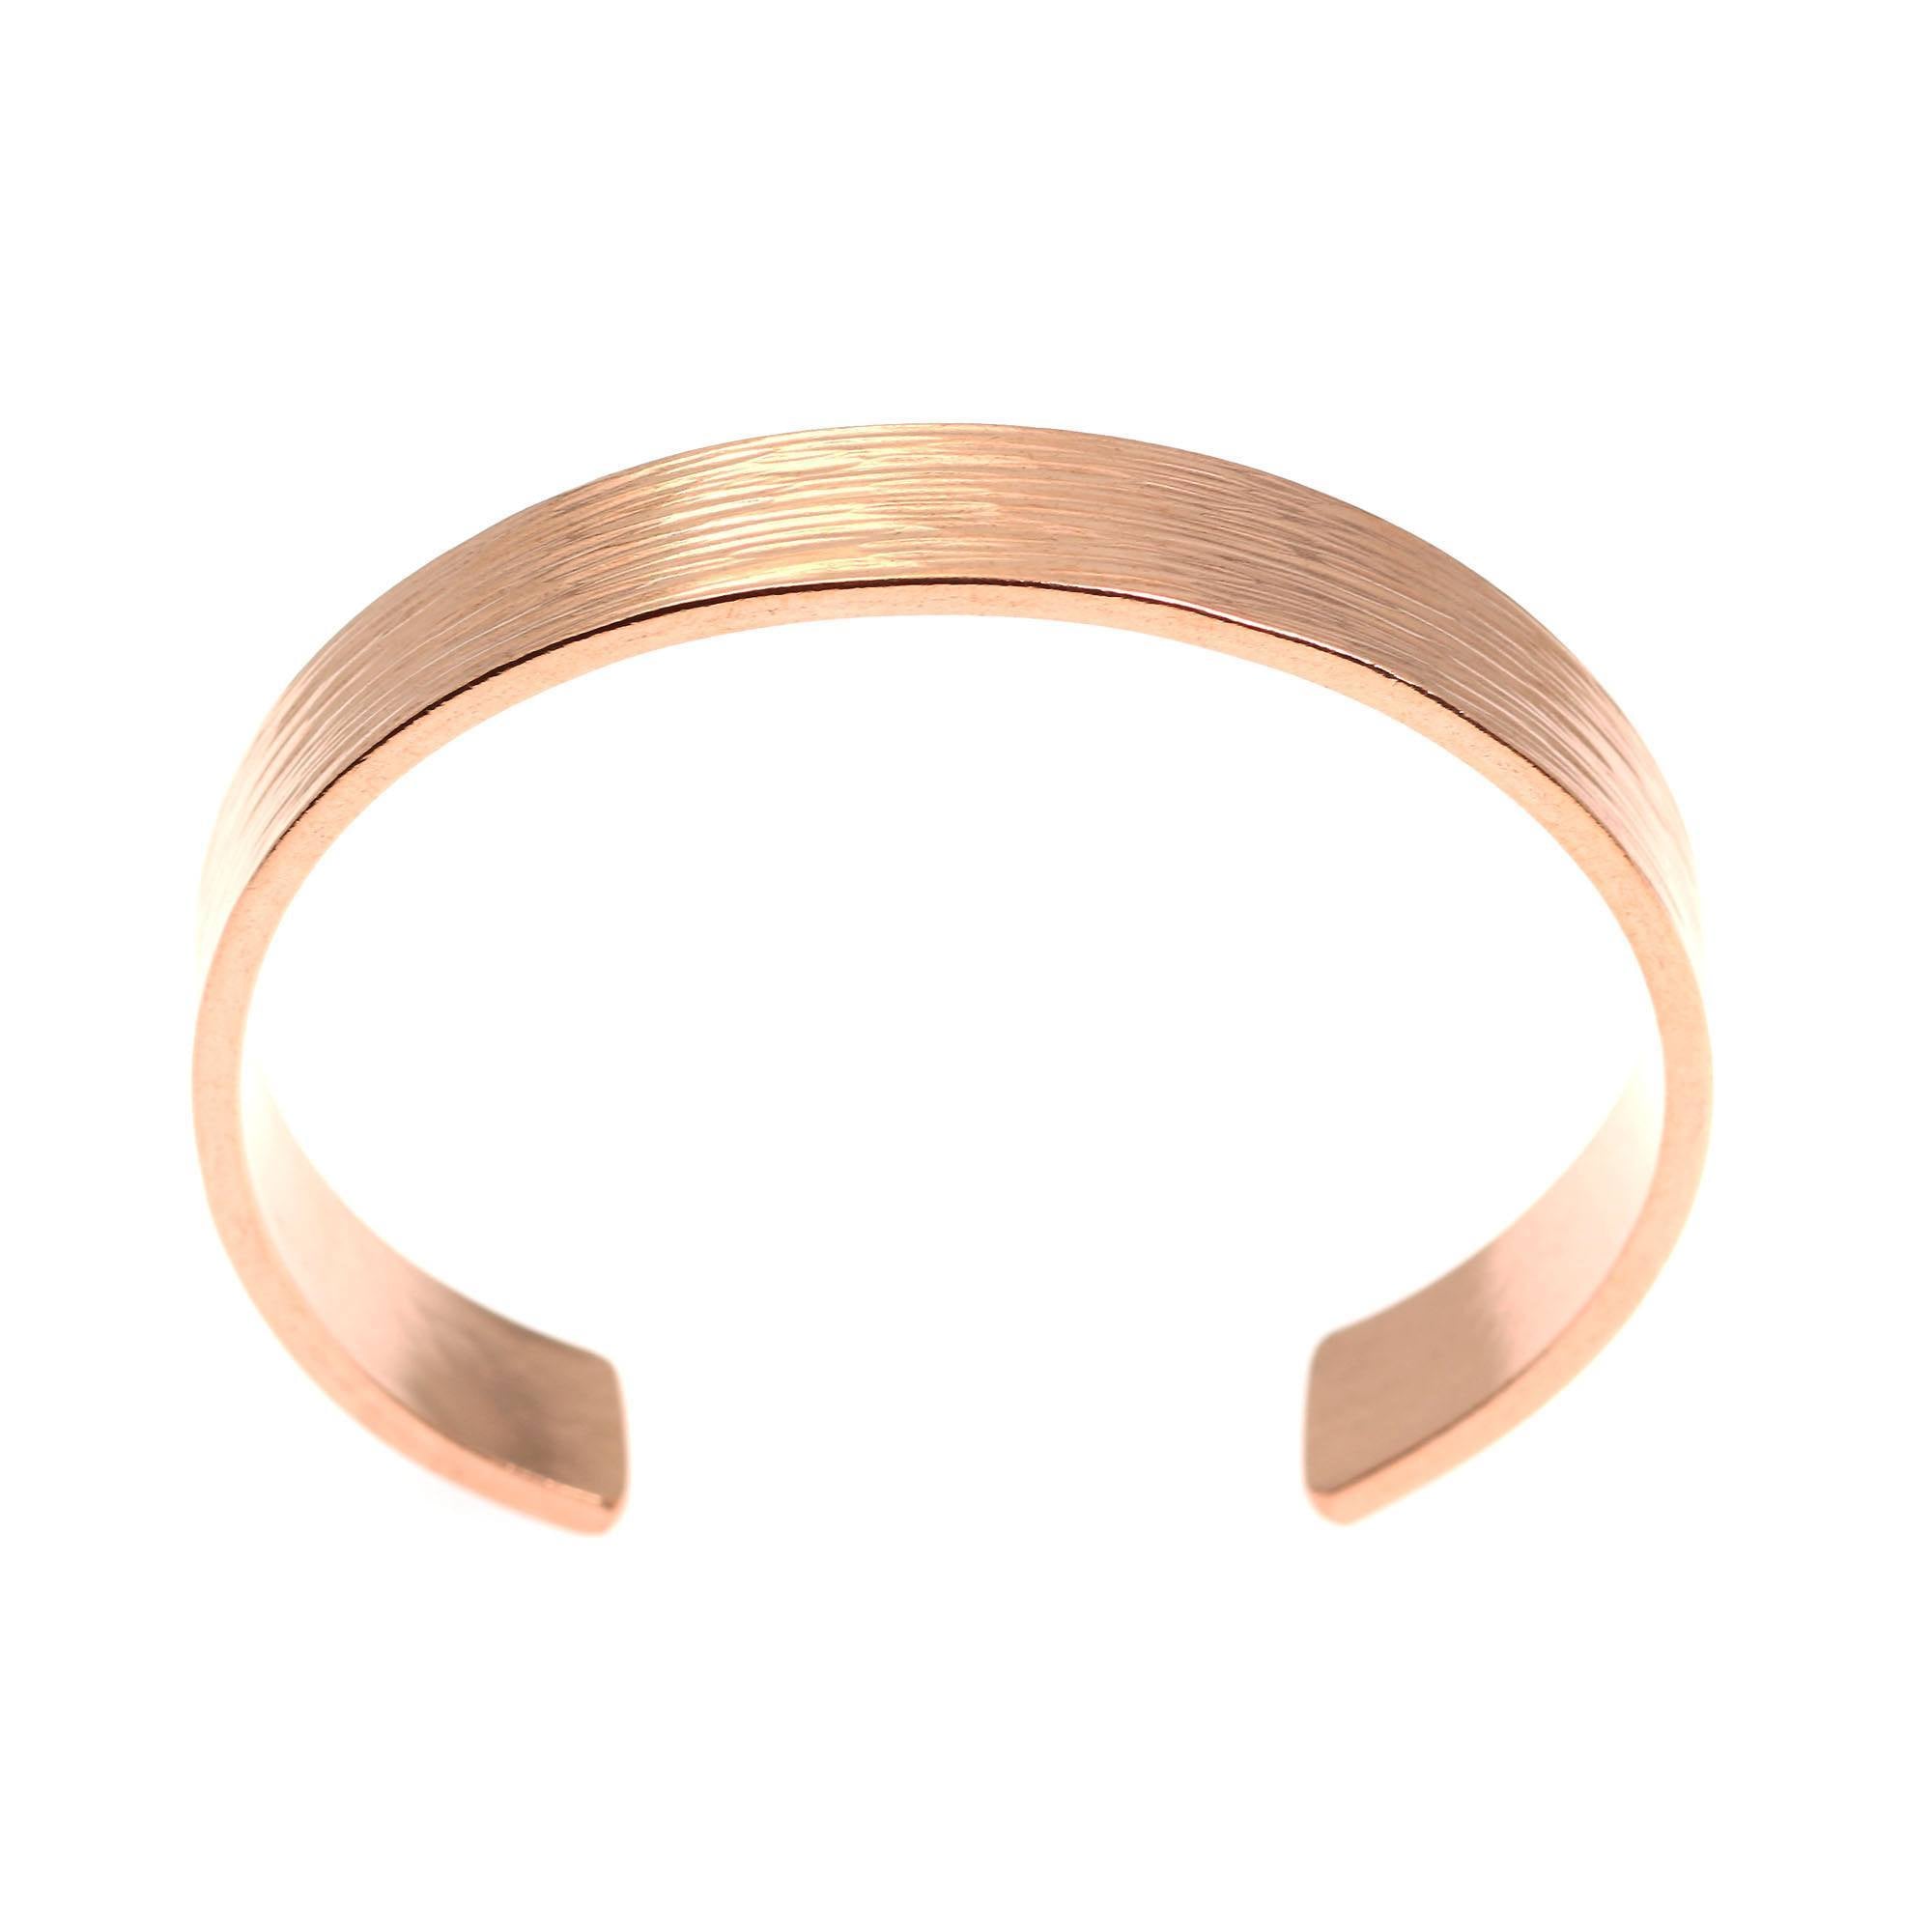 Shape of 10mm Wide Men's Wide Bark Copper Cuff Bracelet